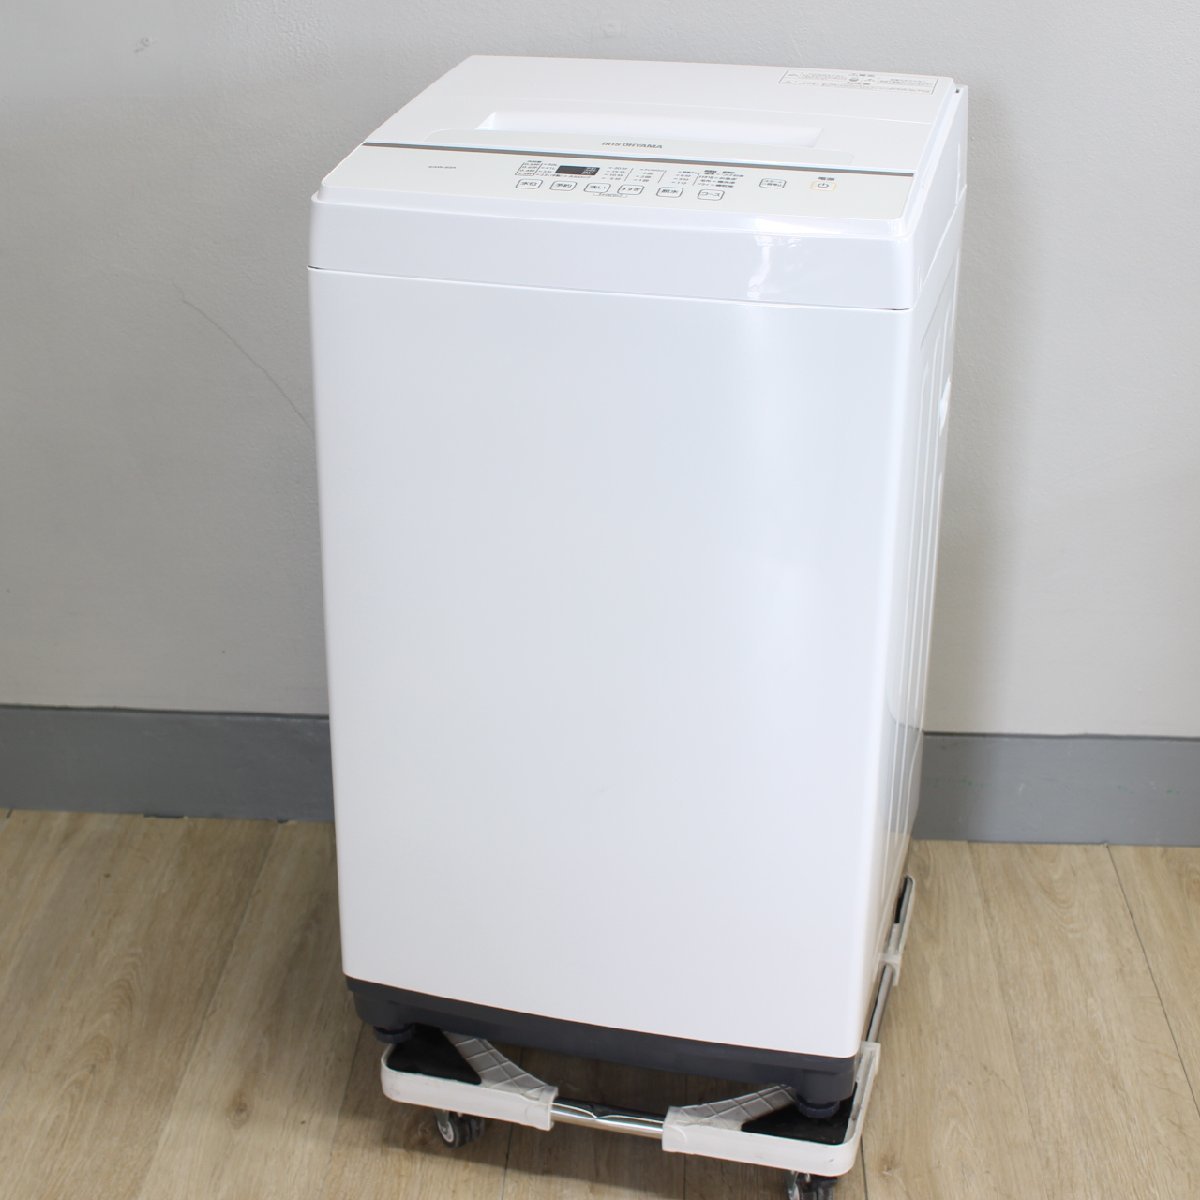 東京都中央区にて アイリスオーヤマ 全自動洗濯機 KAW-60A 2020年製 を出張買取させて頂きました。